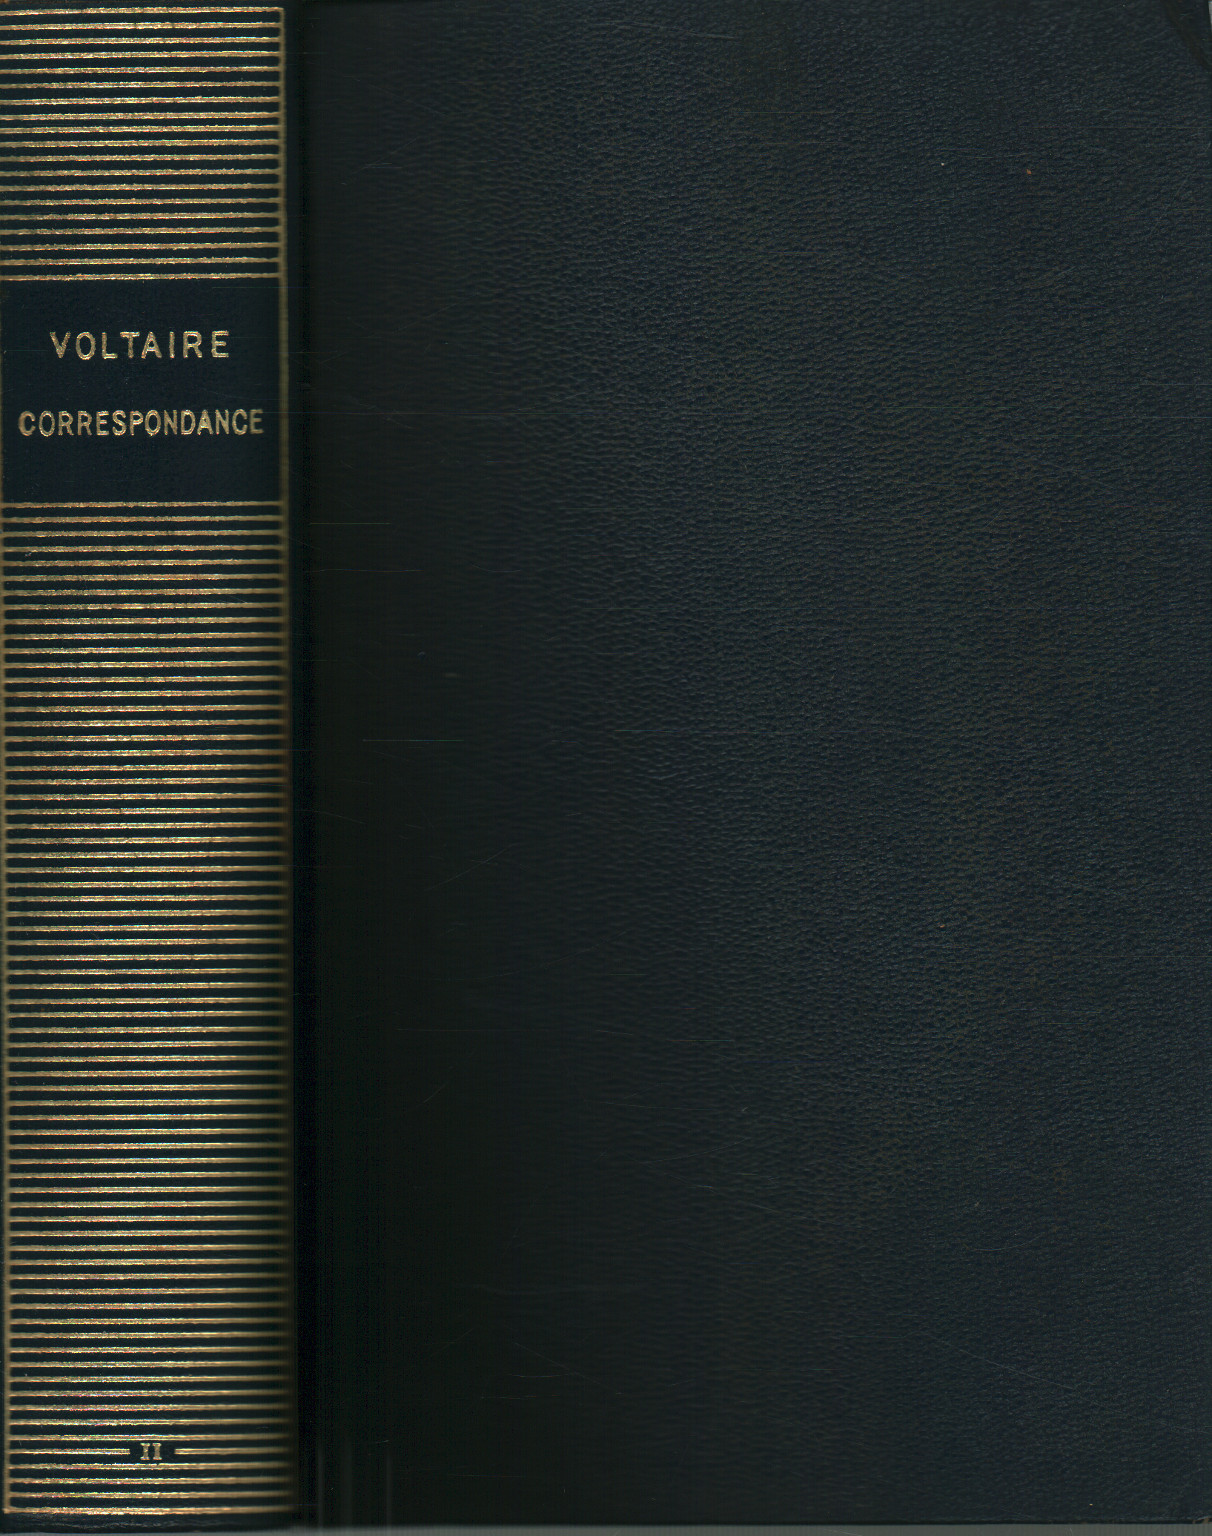 Corrispondance de Voltaire (tomo II), s.una.